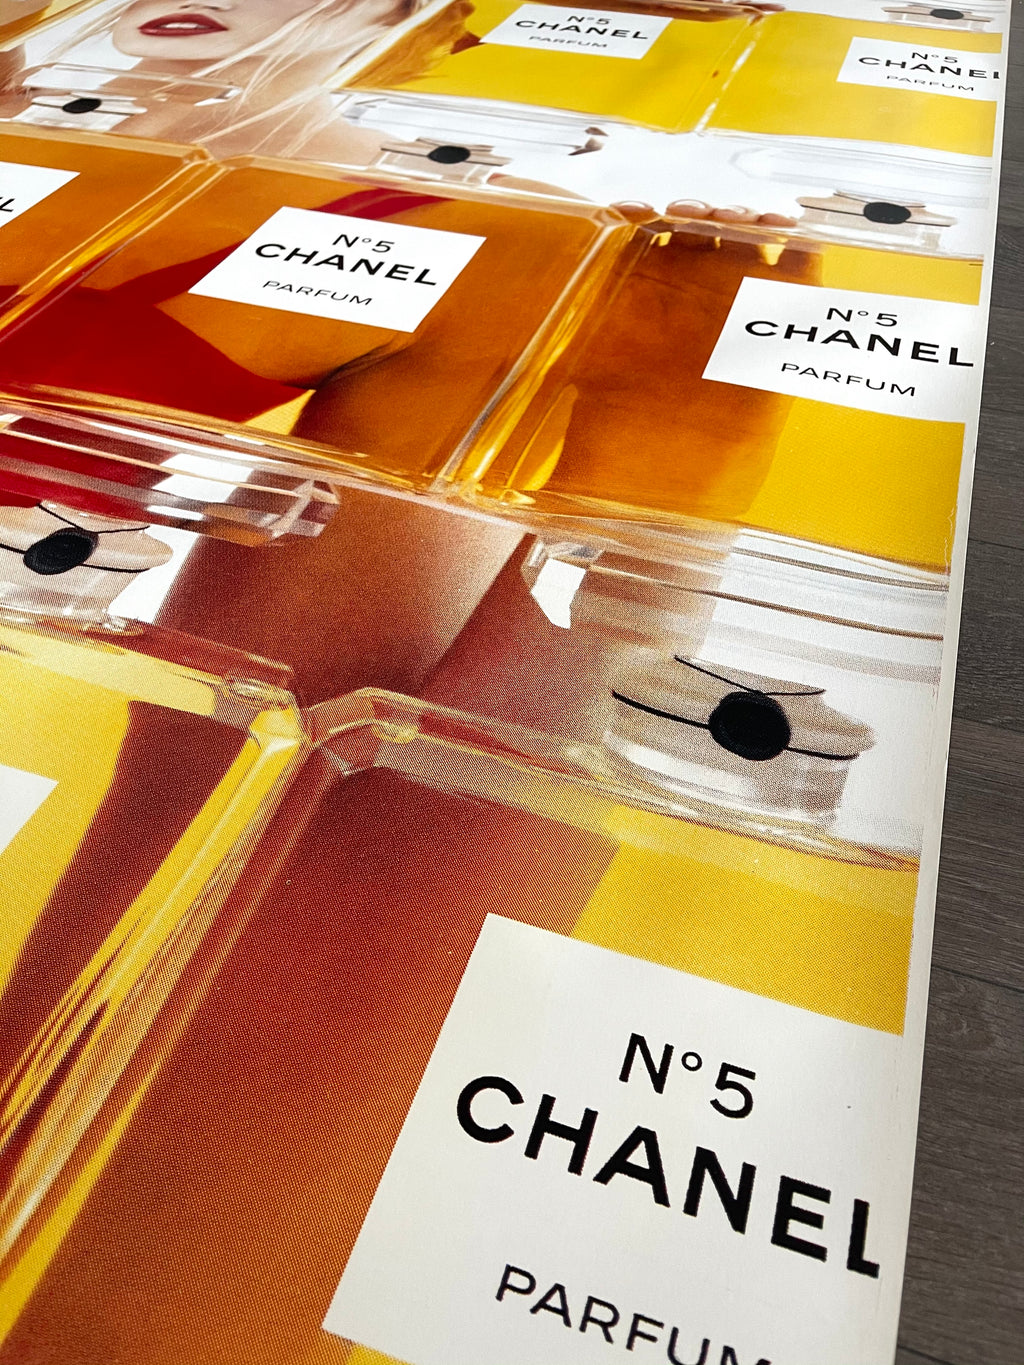 Affiche Vintage , Chanel n°5